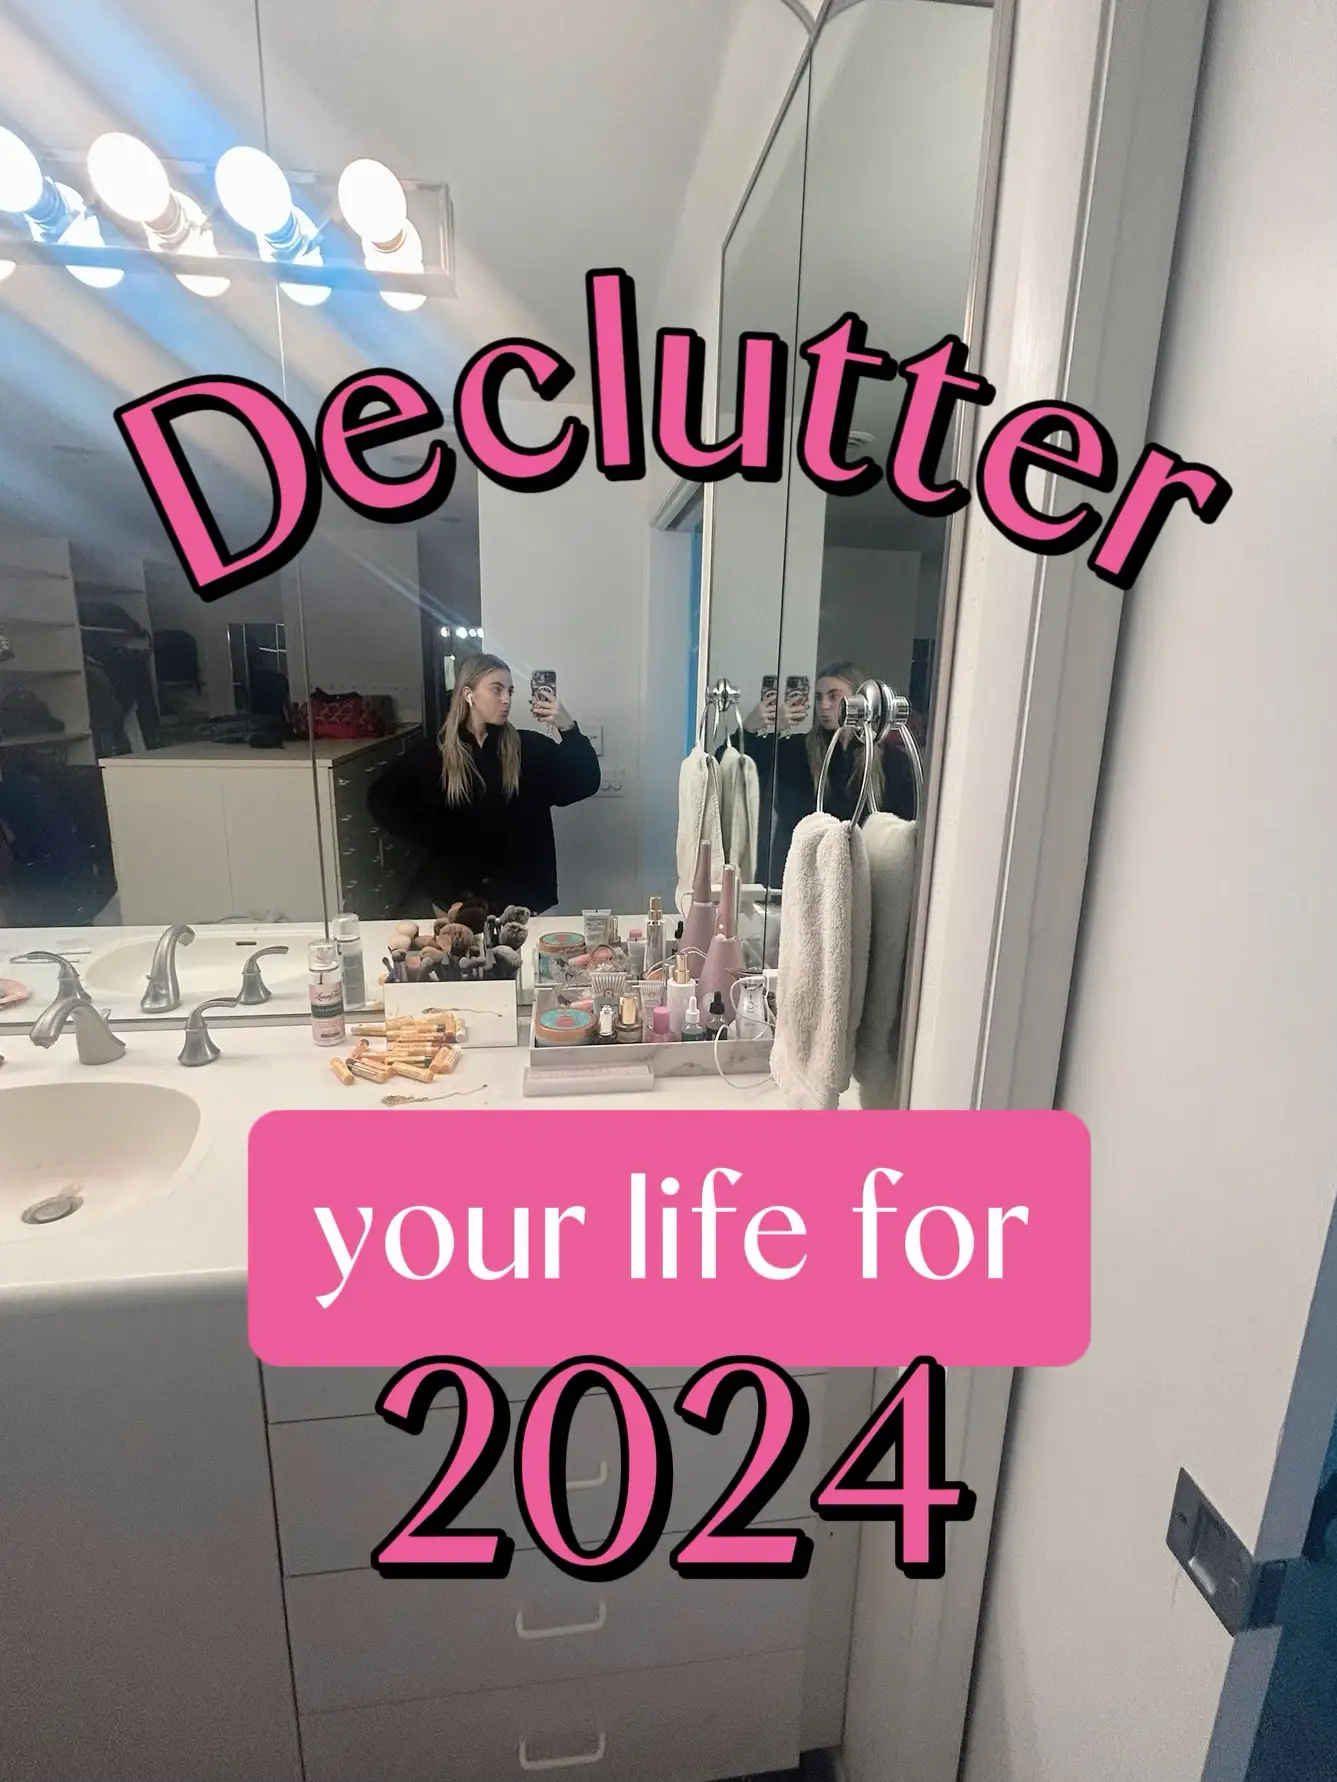 Declutter Your Life: Vanity Organization